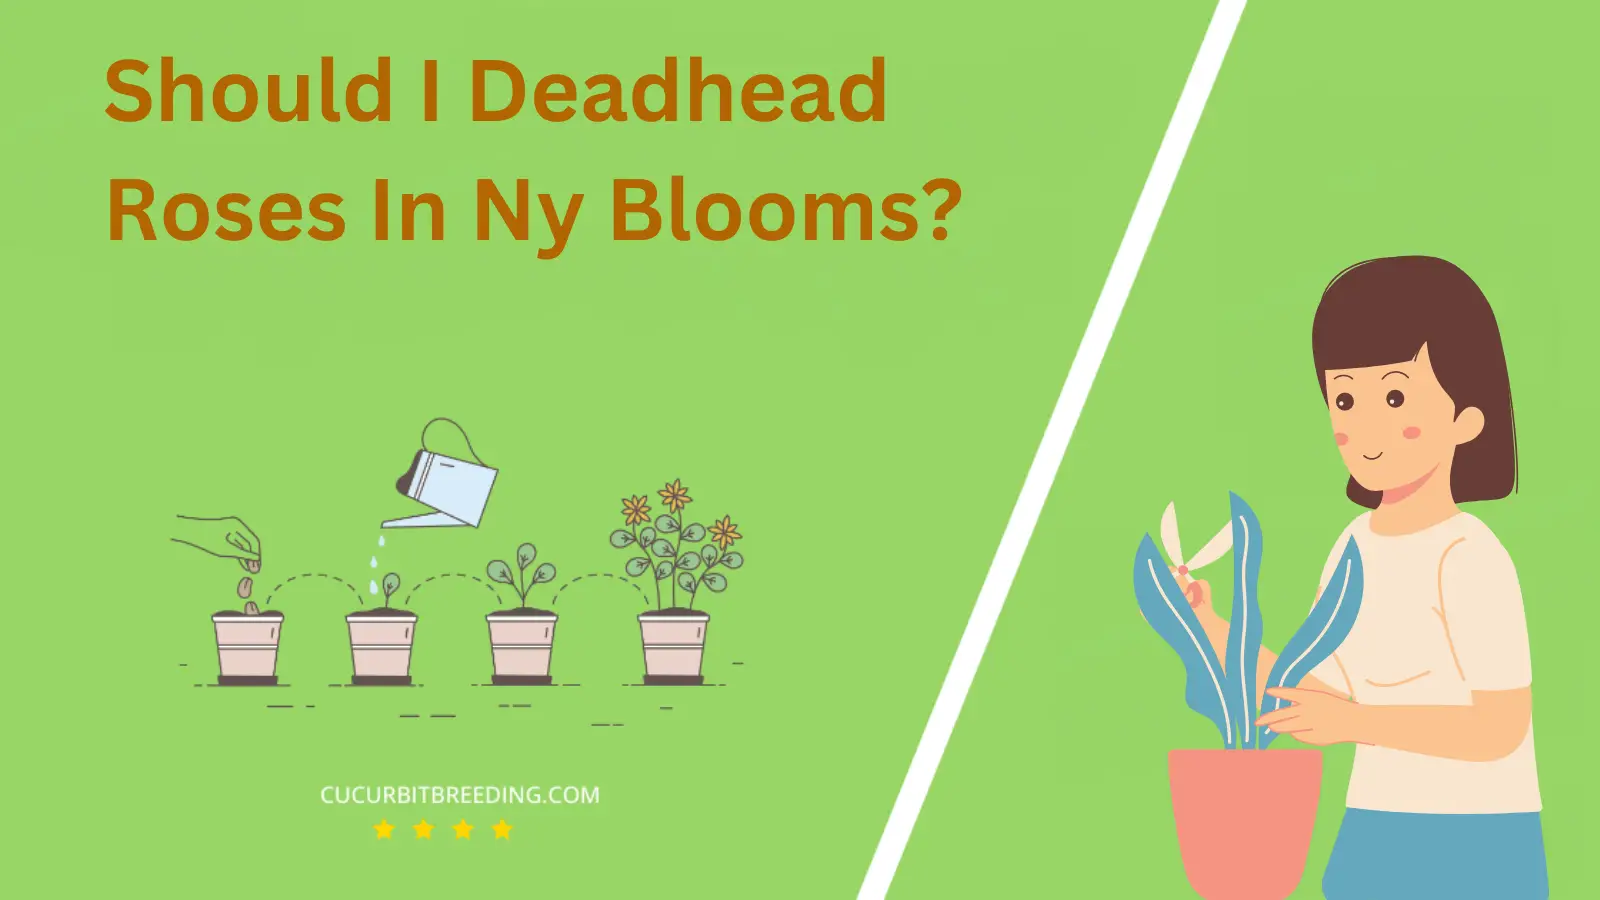 Should I Deadhead Roses In Ny Blooms?